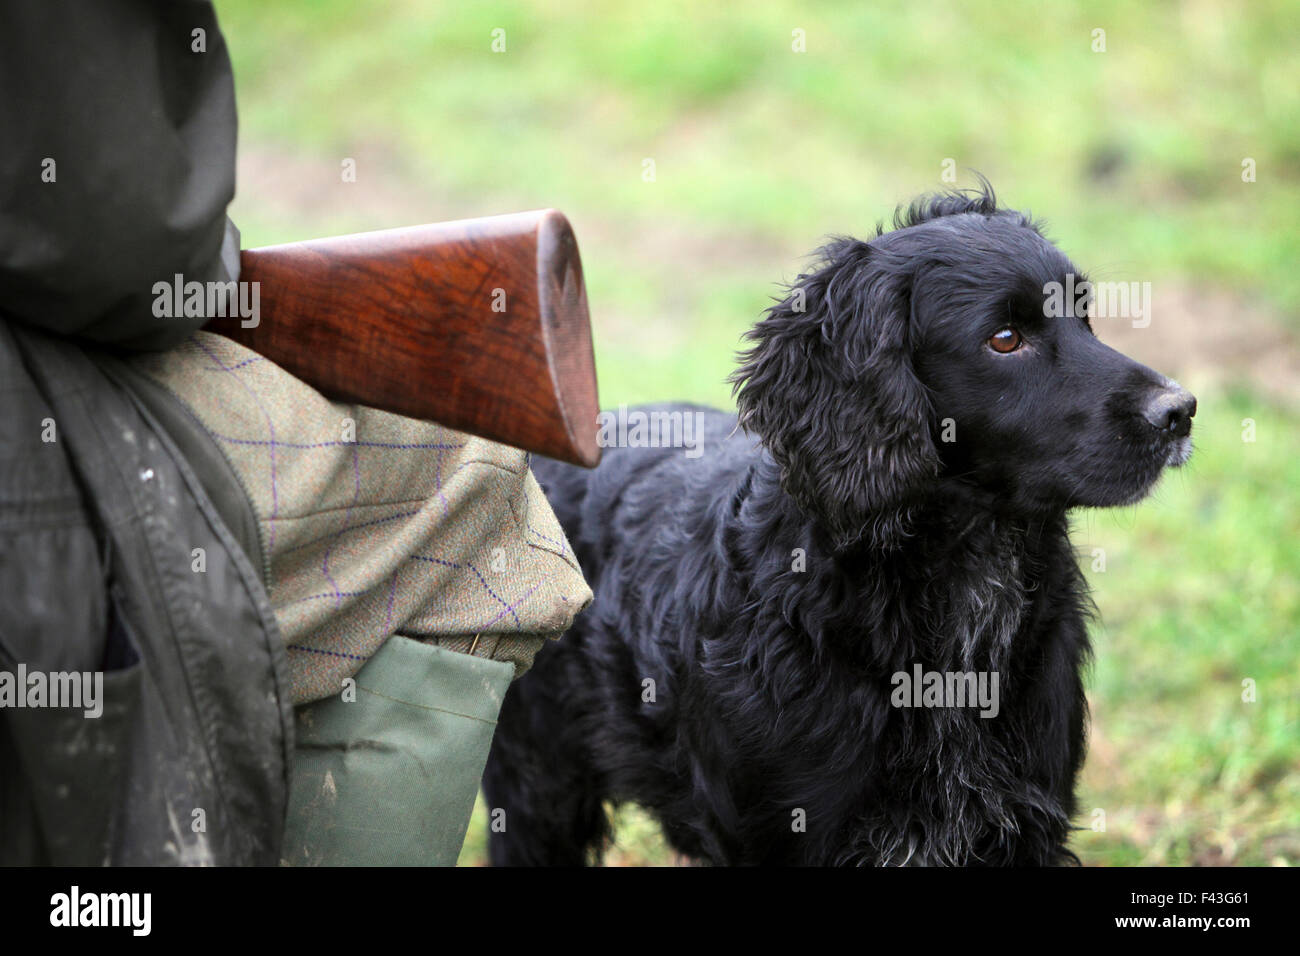 A pheasant shoot.  An alert black trained gundog, a retriever beside a man seated with a gun on his knees. Stock Photo